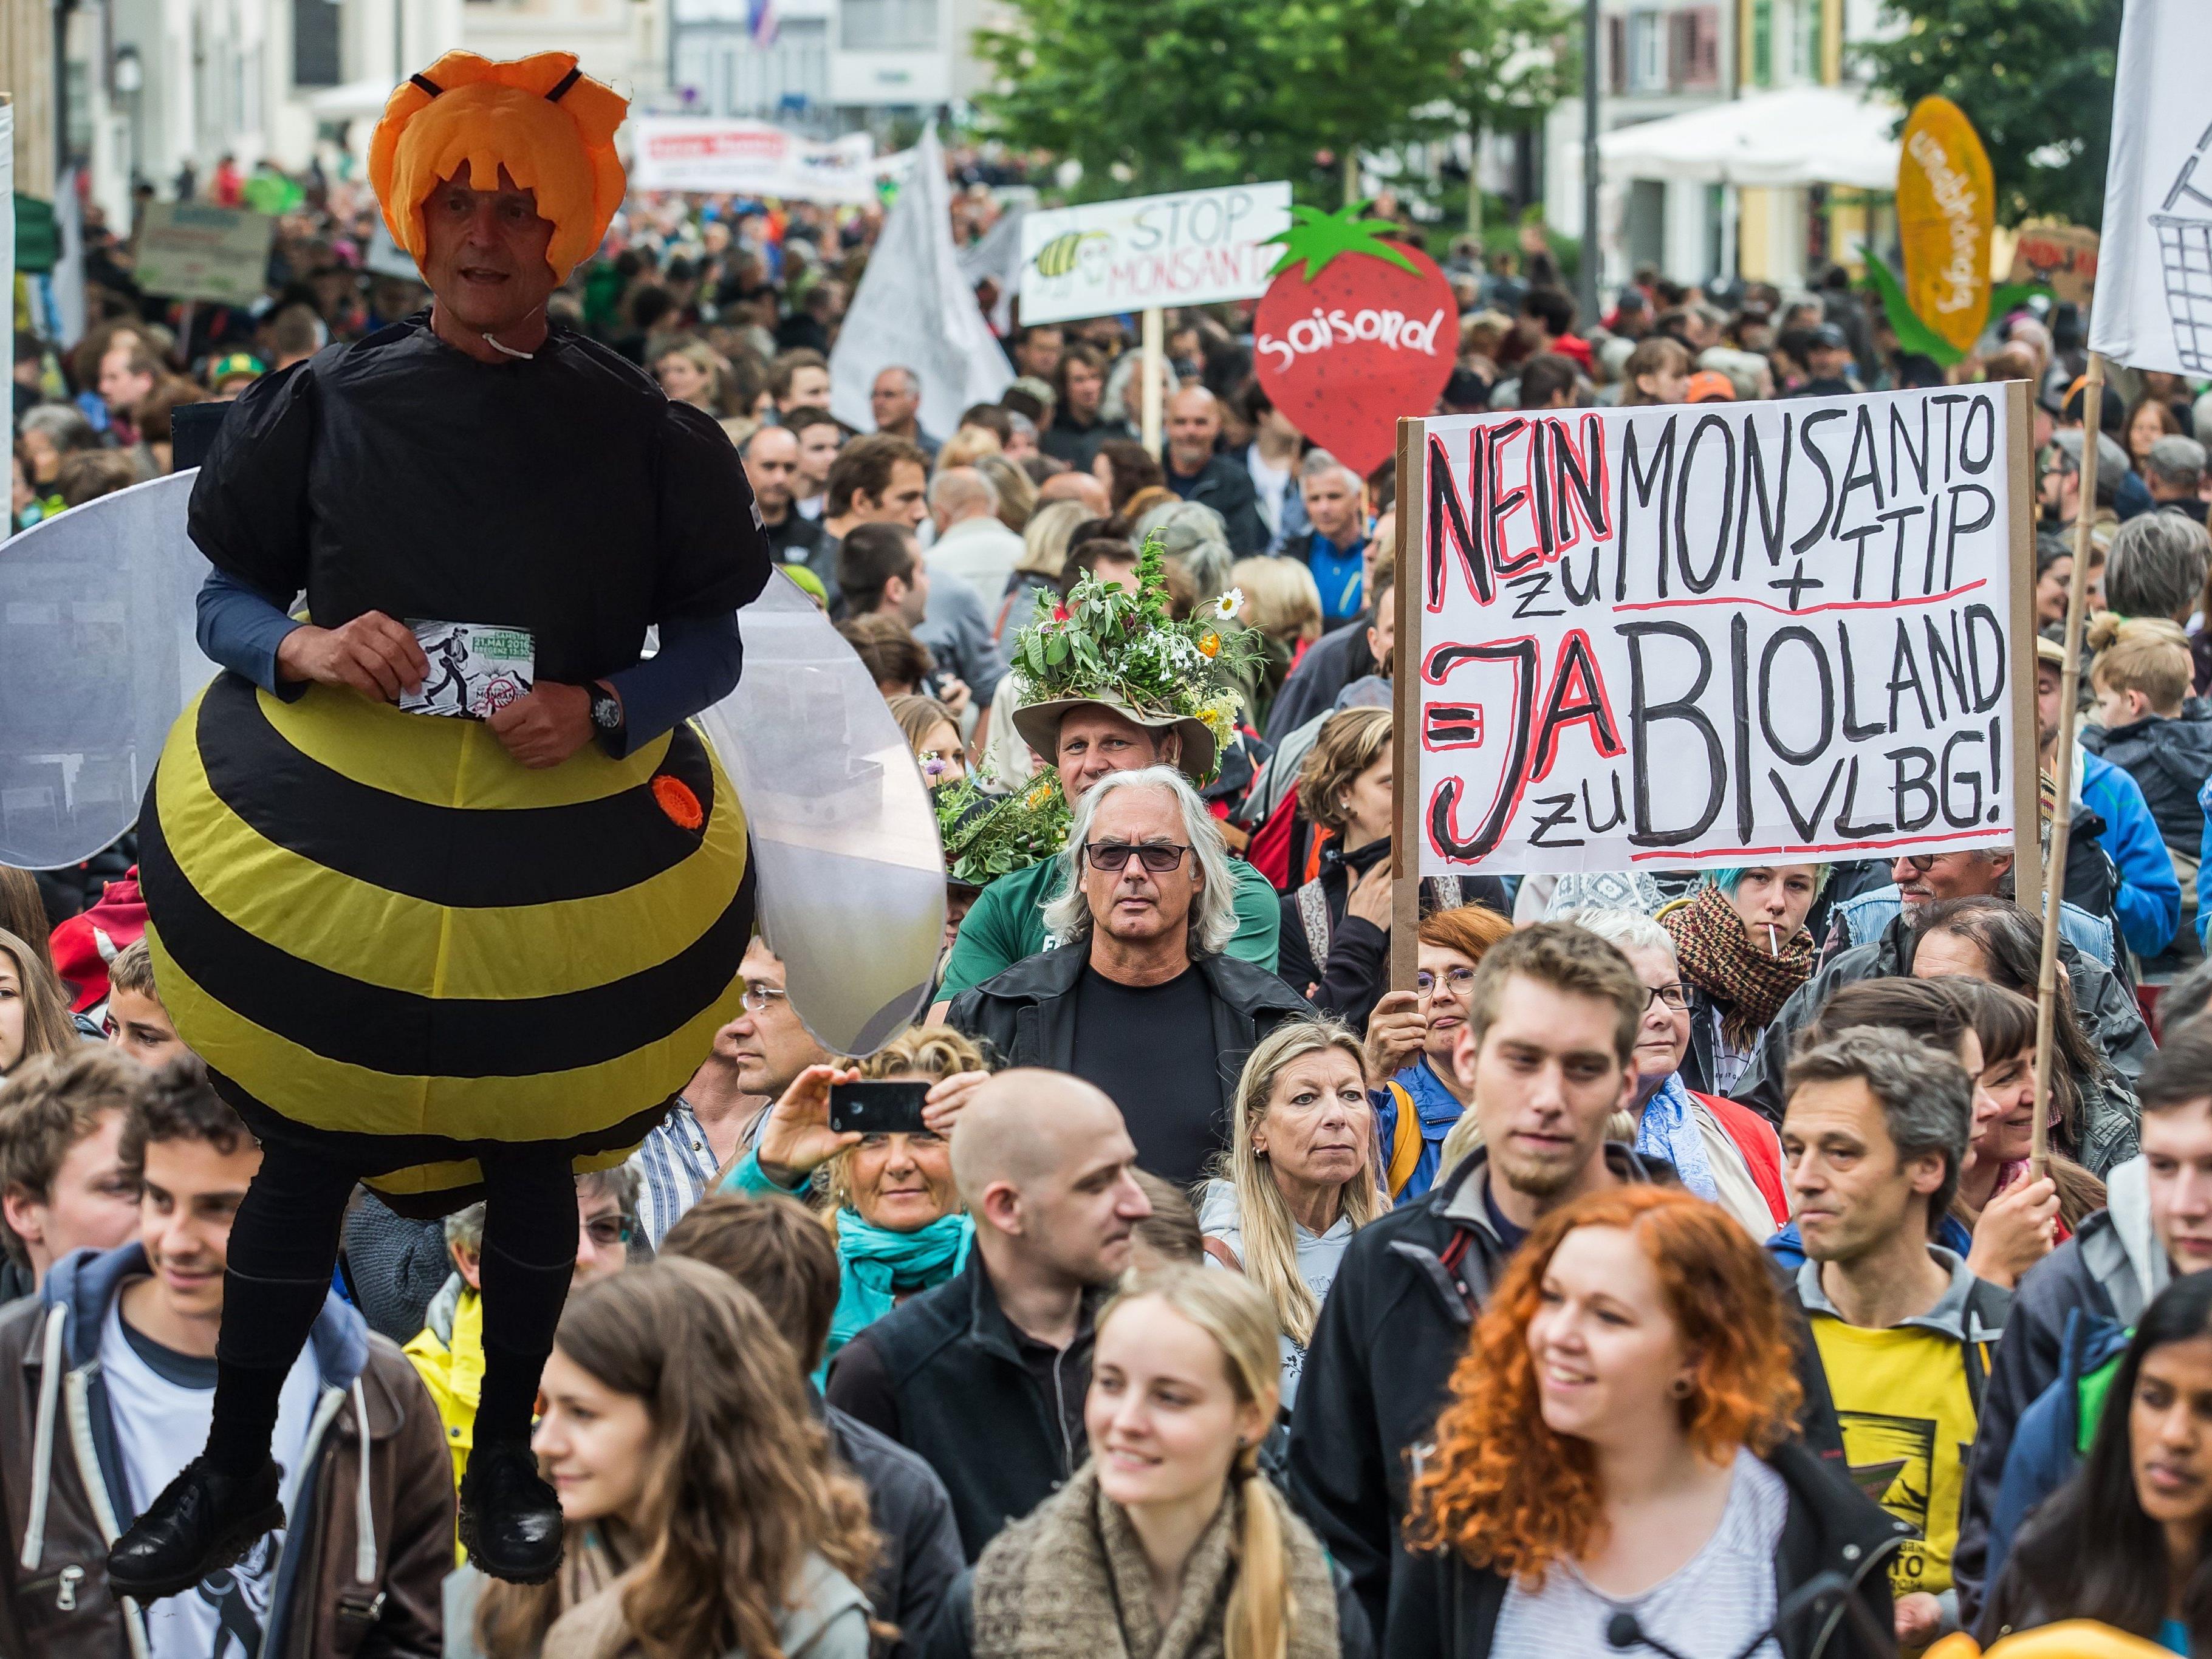 In Bregenz wird heute, Samstag gegen TTIP und Monsanto demonstriert.